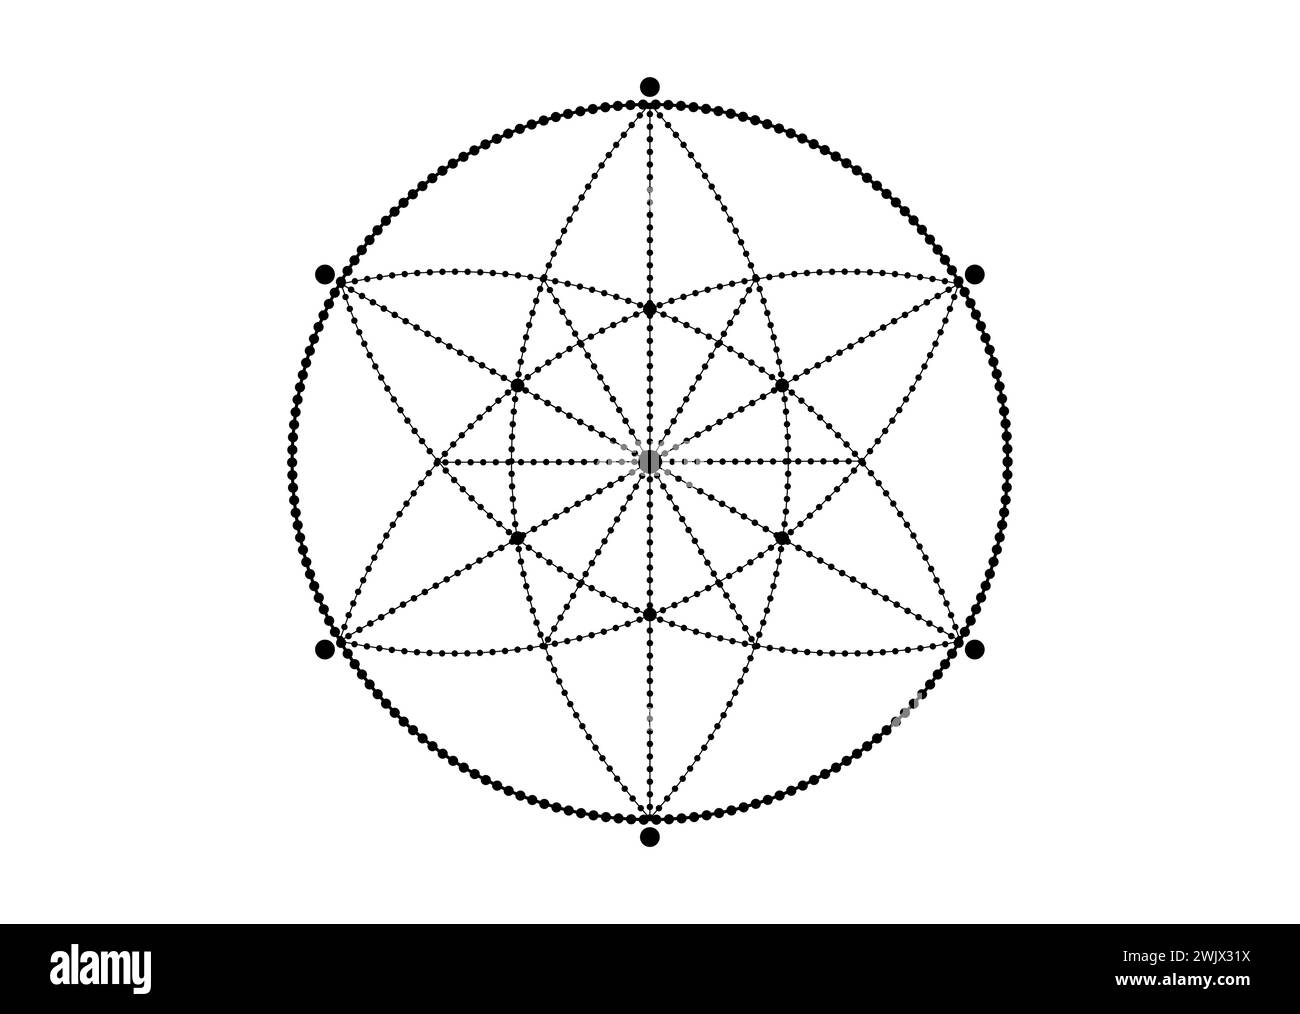 Same of Life Symbol Sacred Geometry Tattoo. Geometrisch-mystische Mandala der Alchemie-esoterischen Blume des Lebens. Schwarzer Vektor göttliches meditatives Amulett Isolat Stock Vektor